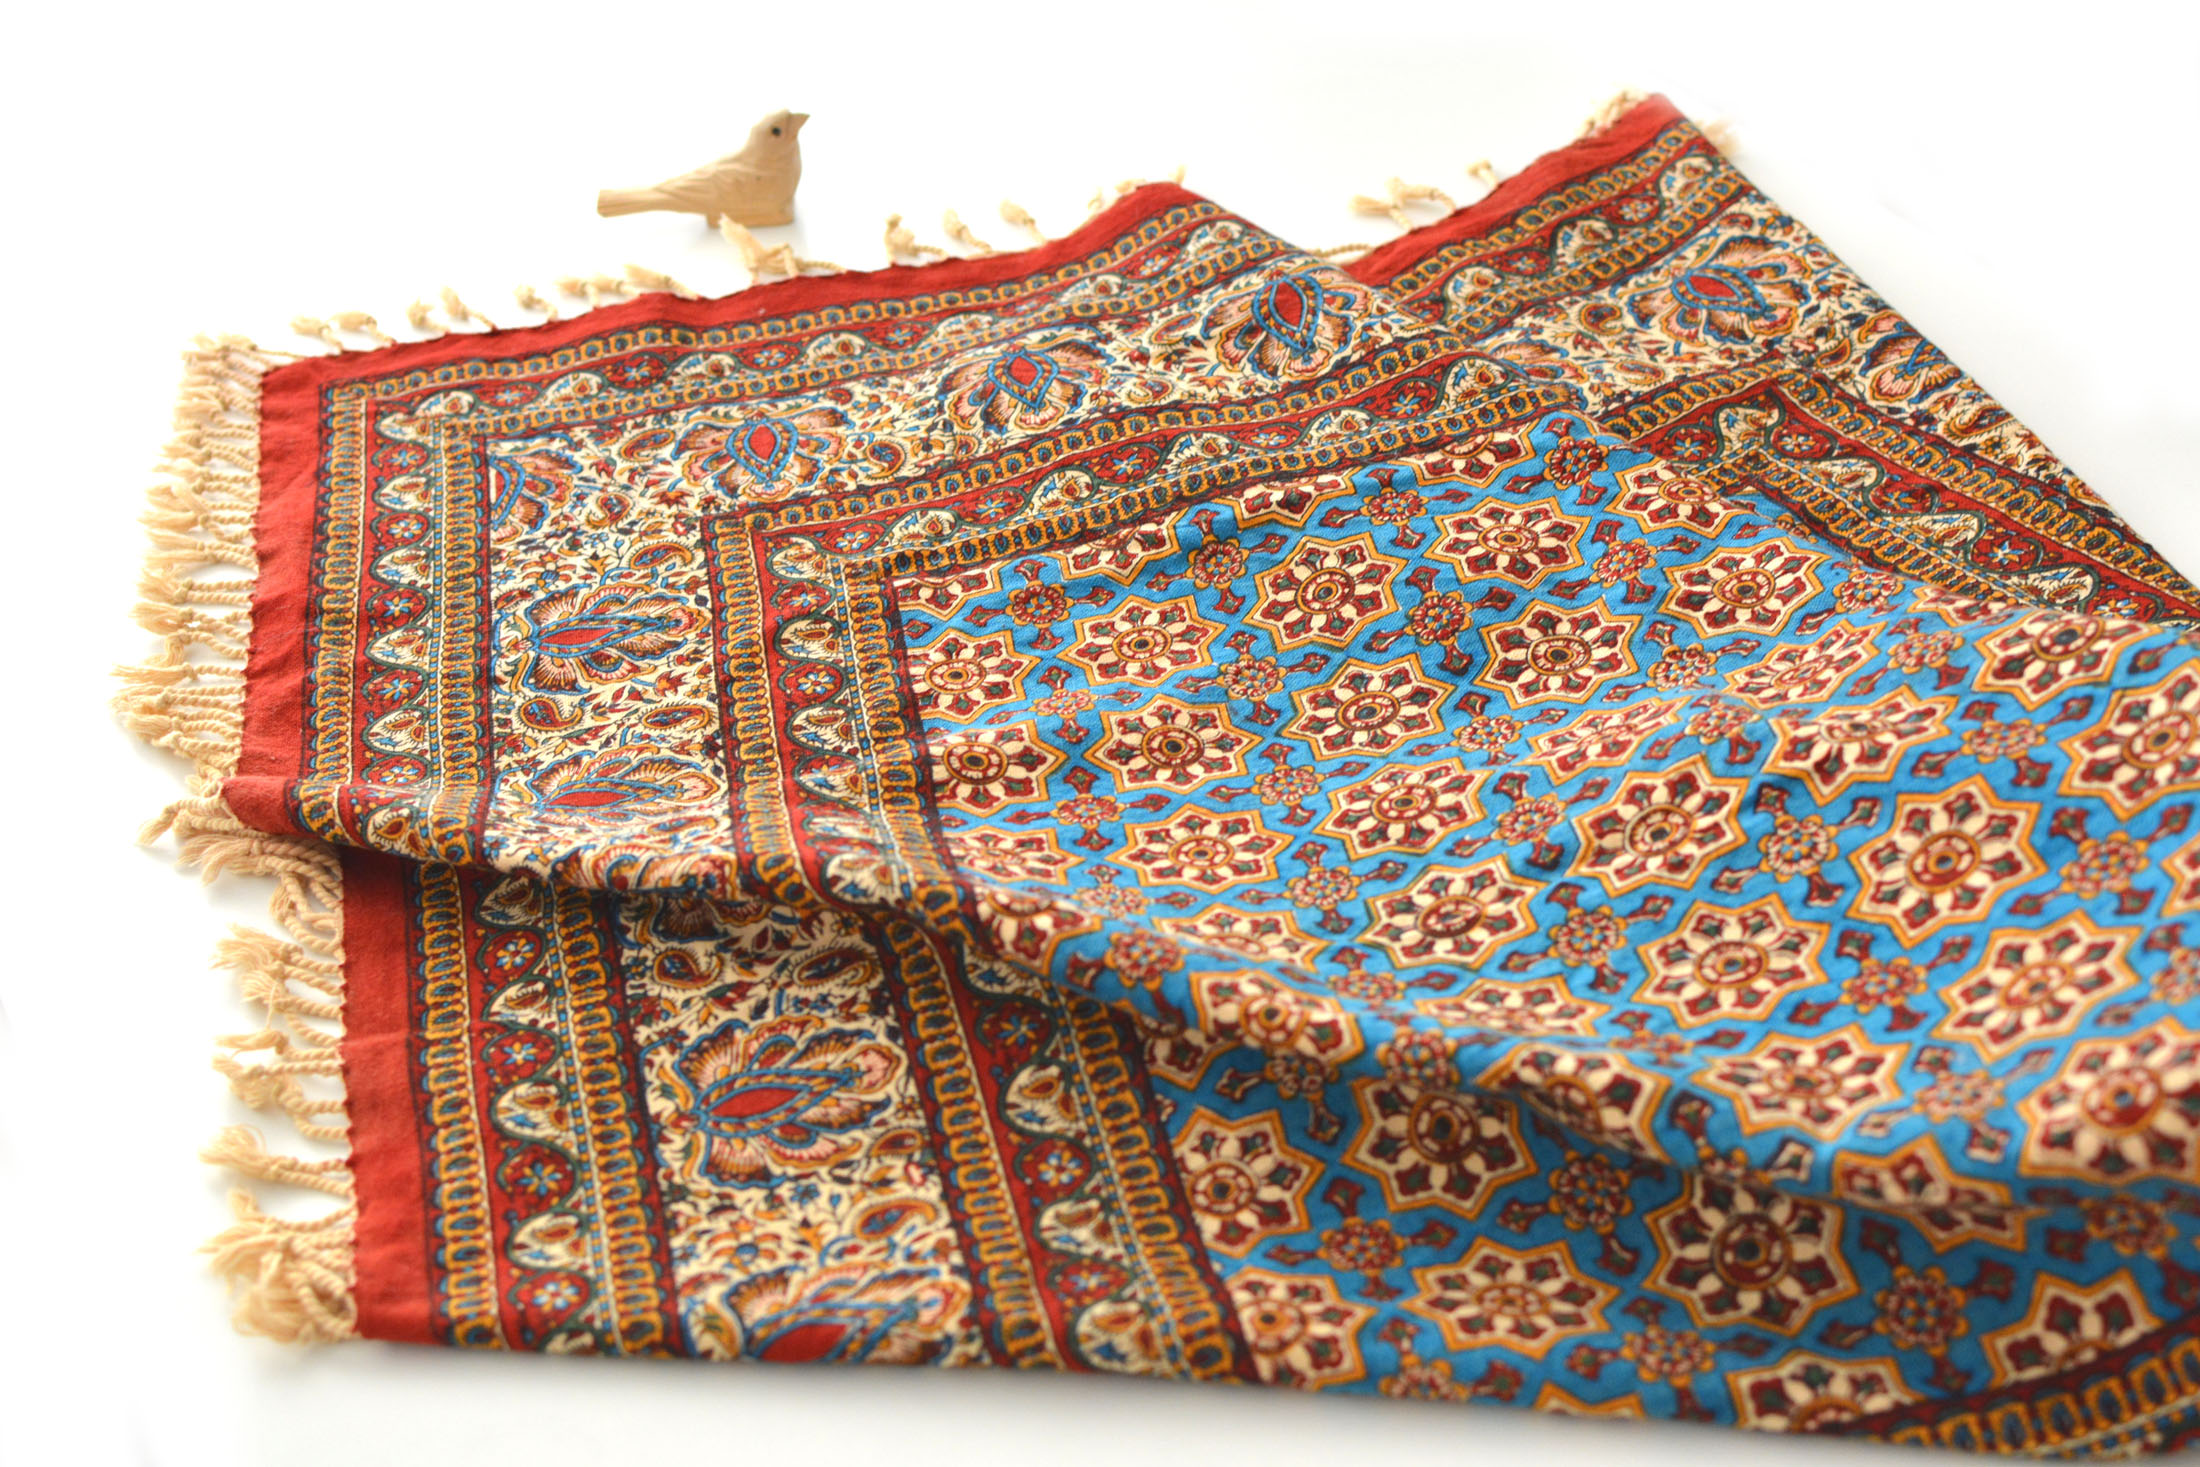 Hand-Blocked Print Ghalamkar Tablecloth - Azar Bazaar - Handmade Shop